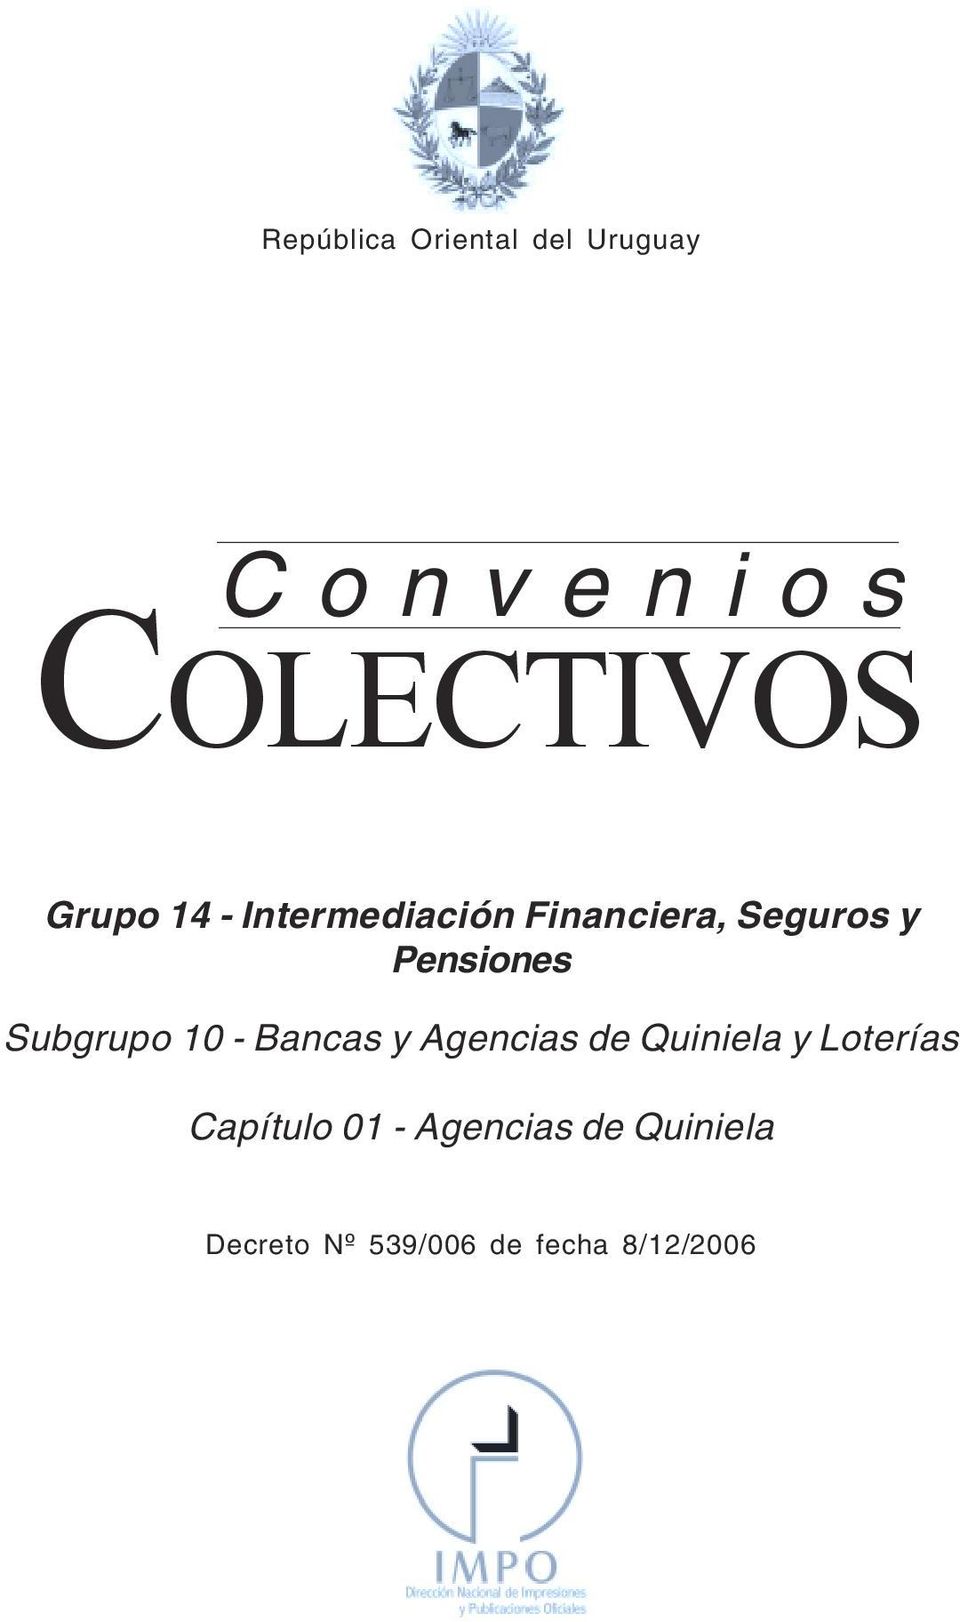 Financiera, Seguros y Pensiones Subgrupo 10 - Bancas y Agencias de